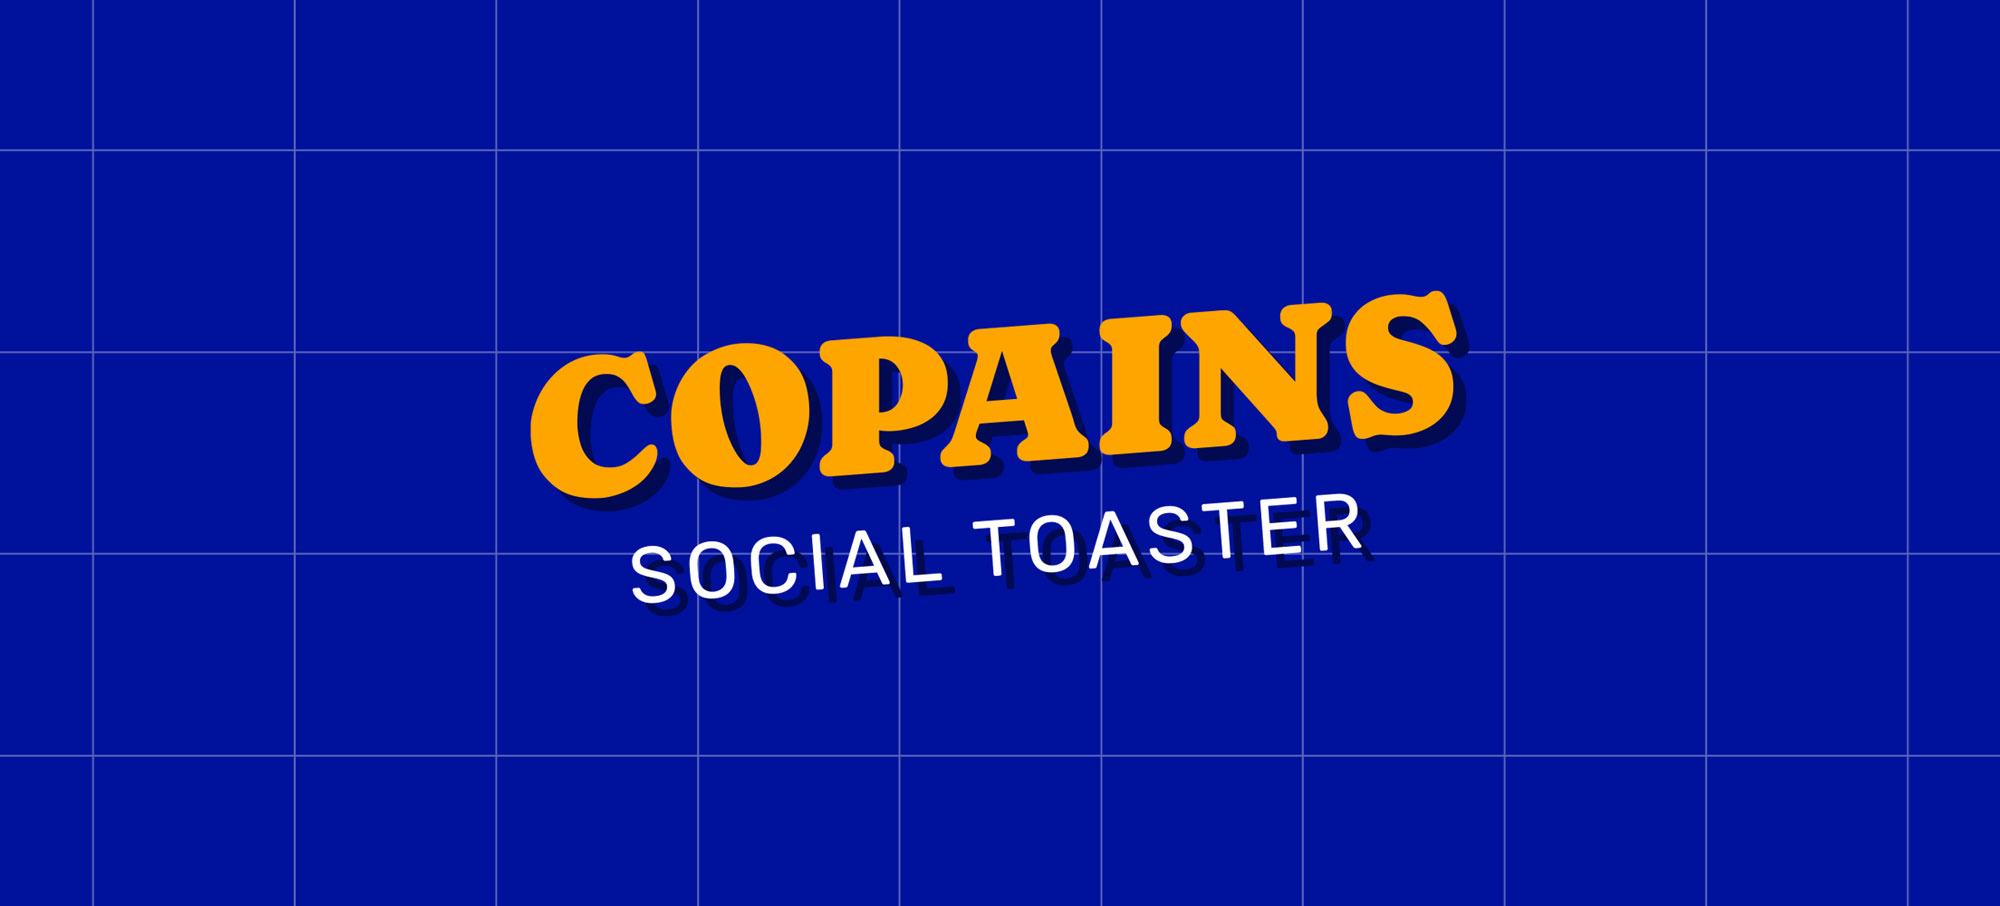 Logo COPAINS - Social Toaster sur fonds bleu avec pattern de plusieurs carrés